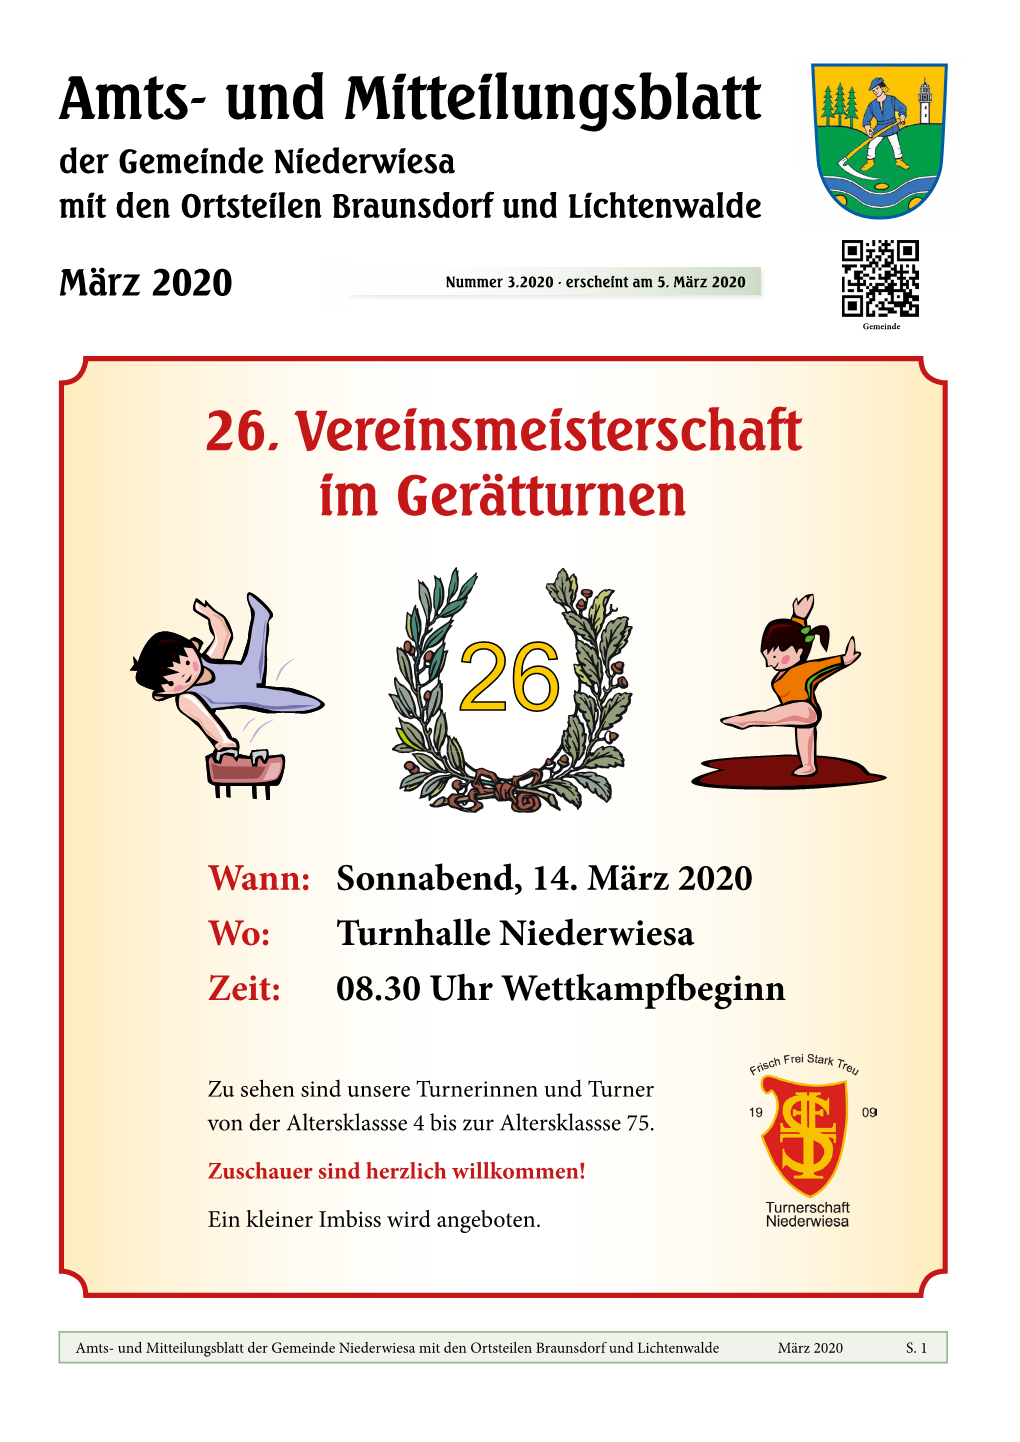 Amtsblatt Niederwiesa – März 2020